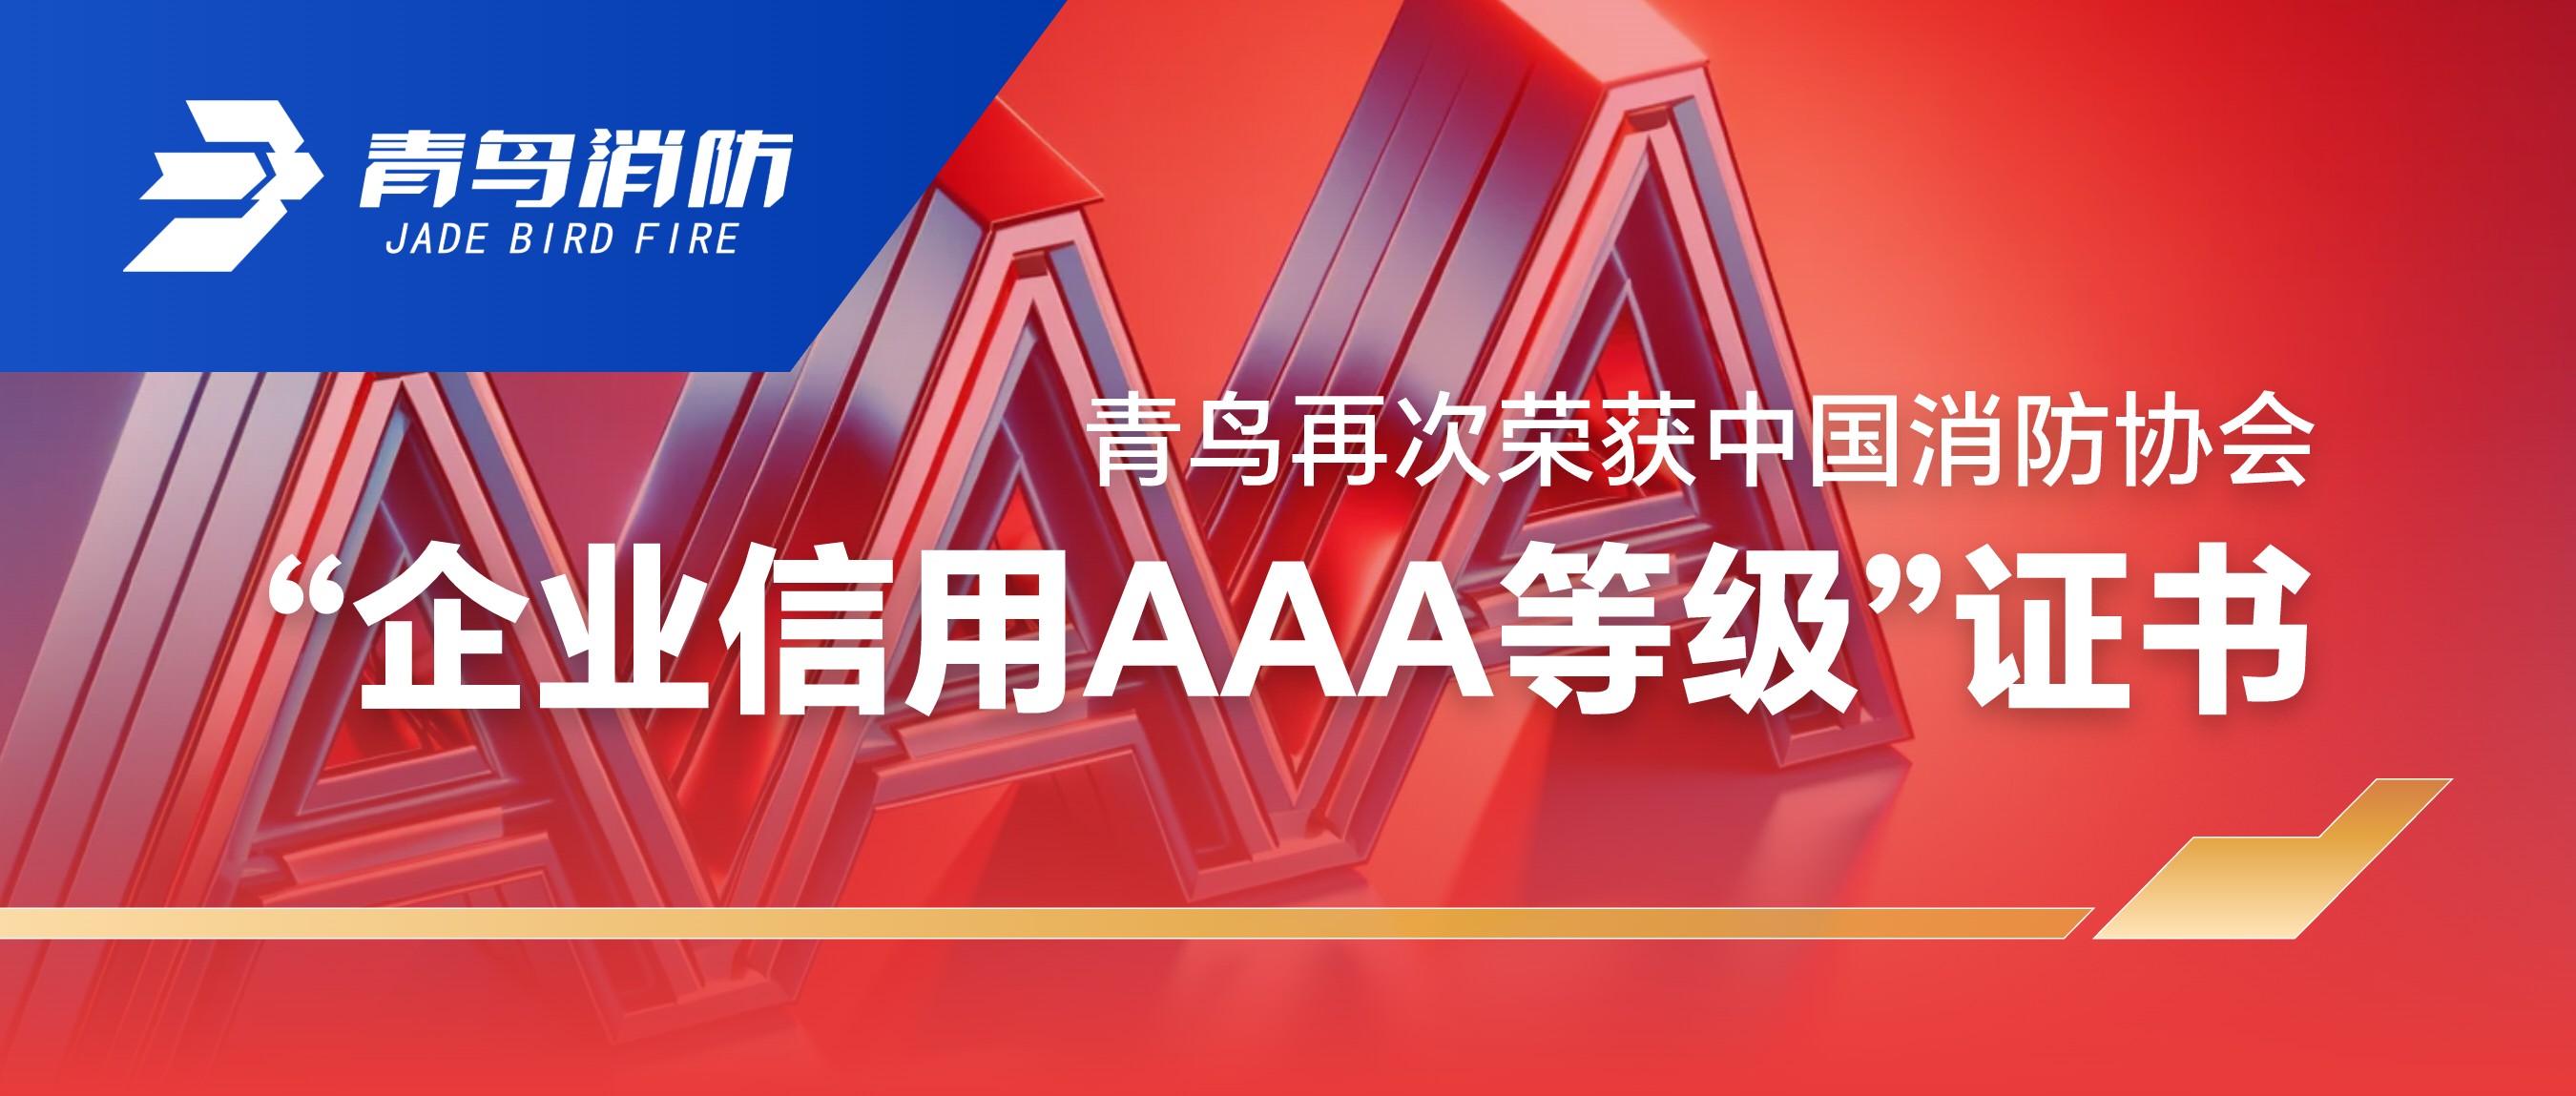 金年会app下载入口
再次荣获中国消防协会“企业信用AAA等级”证书